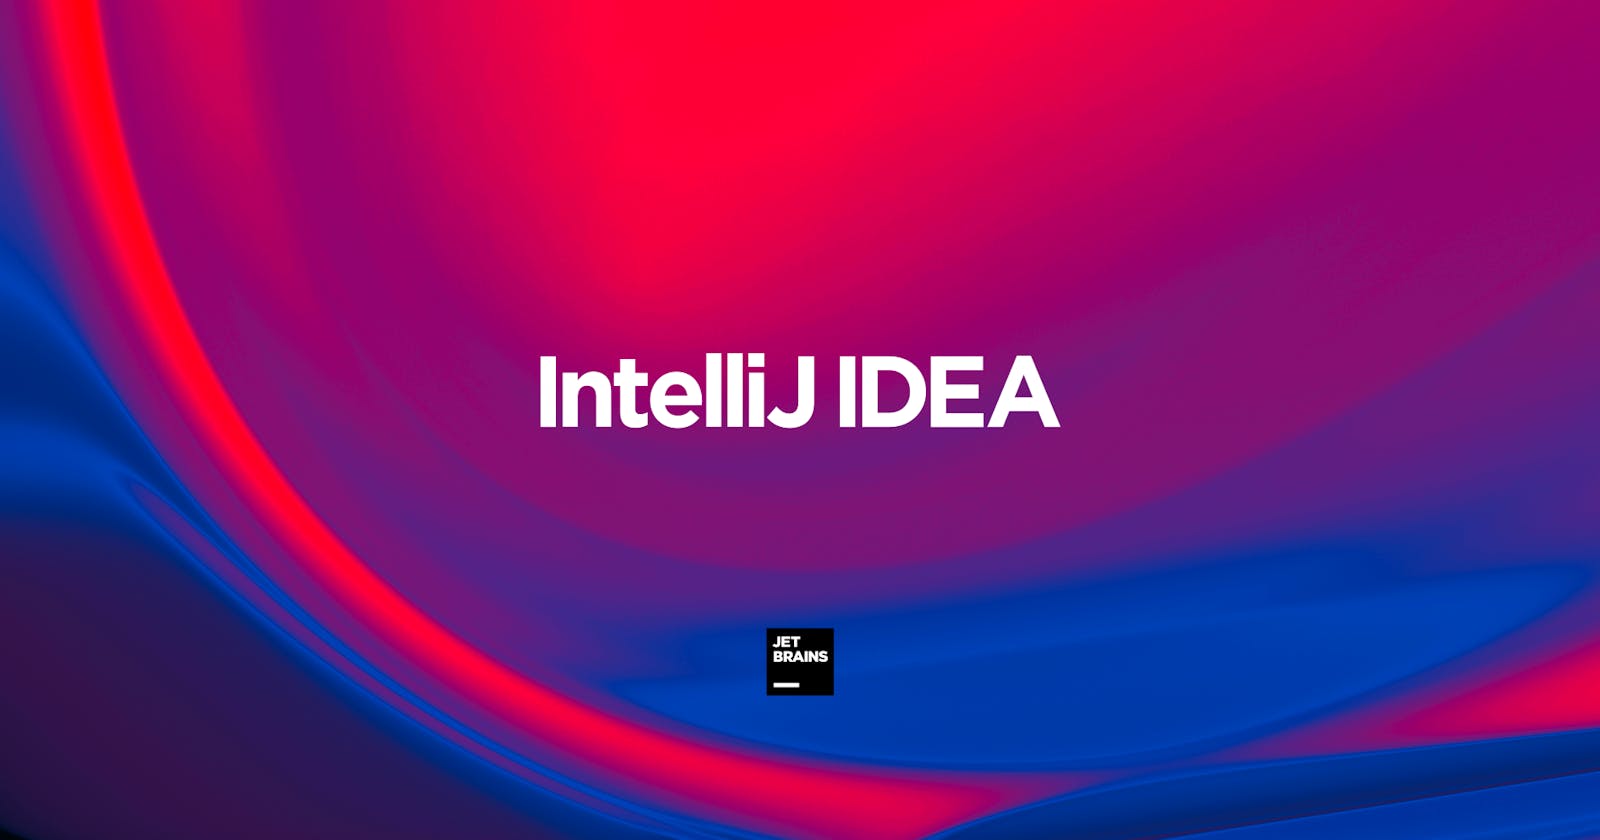 Install IntelliJ IDEA on Linux